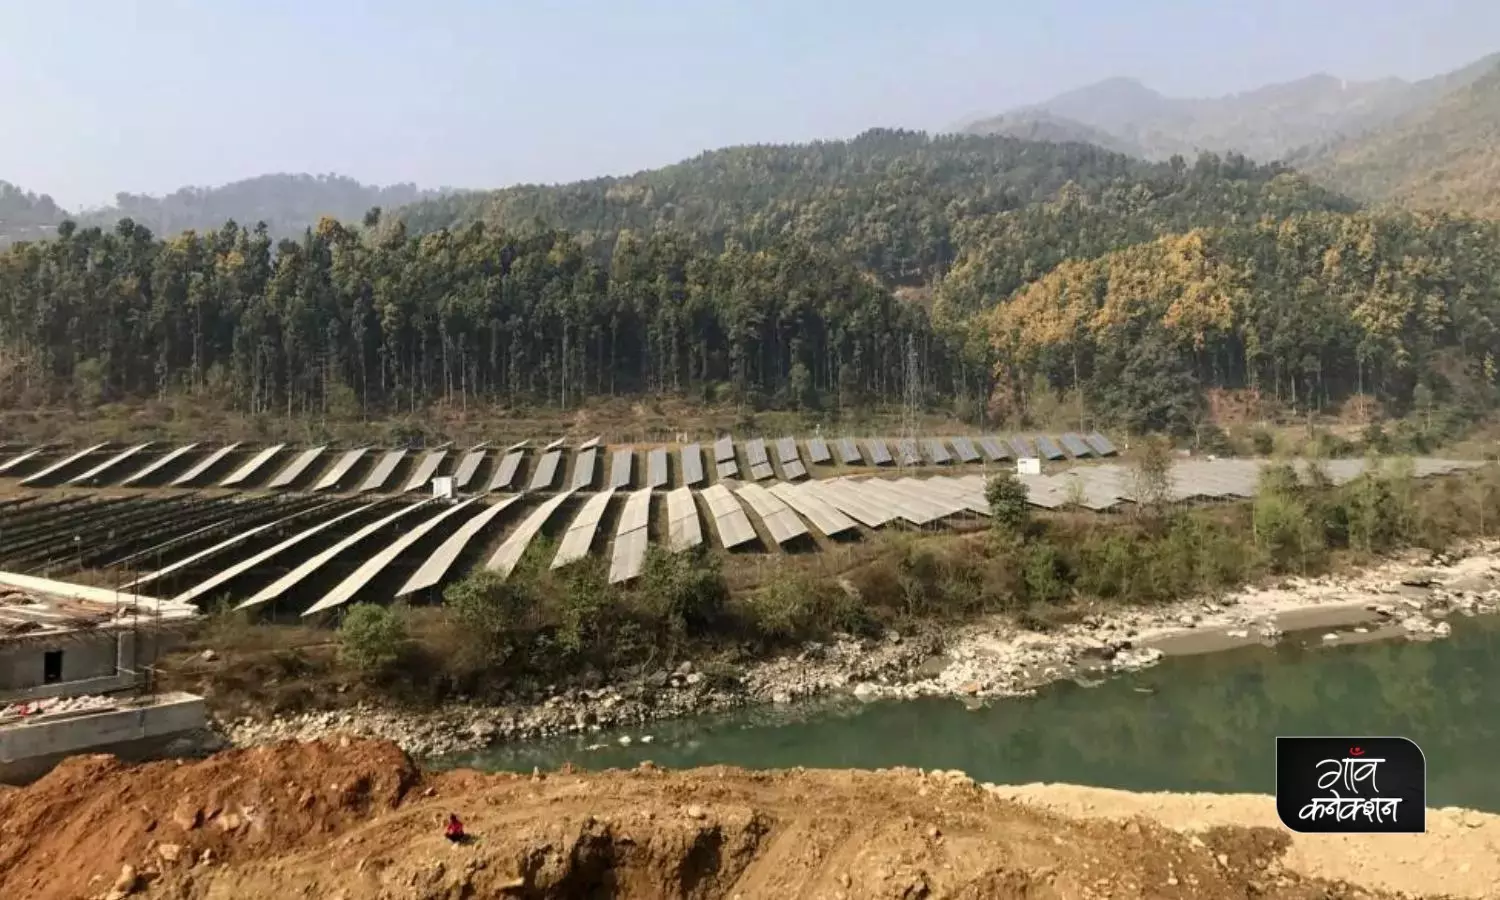 नेपाल की कुल बिजली उत्पादन क्षमता 2,577.48 मेगा वाट (मेगावाट) तक पहुँच गई है, जिसमें से 2,492.95 मेगावाट राष्ट्रीय ग्रिड से जुड़ा है, जबकि बाकी 84.53 मेगावाट ऑफ-ग्रिड आपूर्ति है।